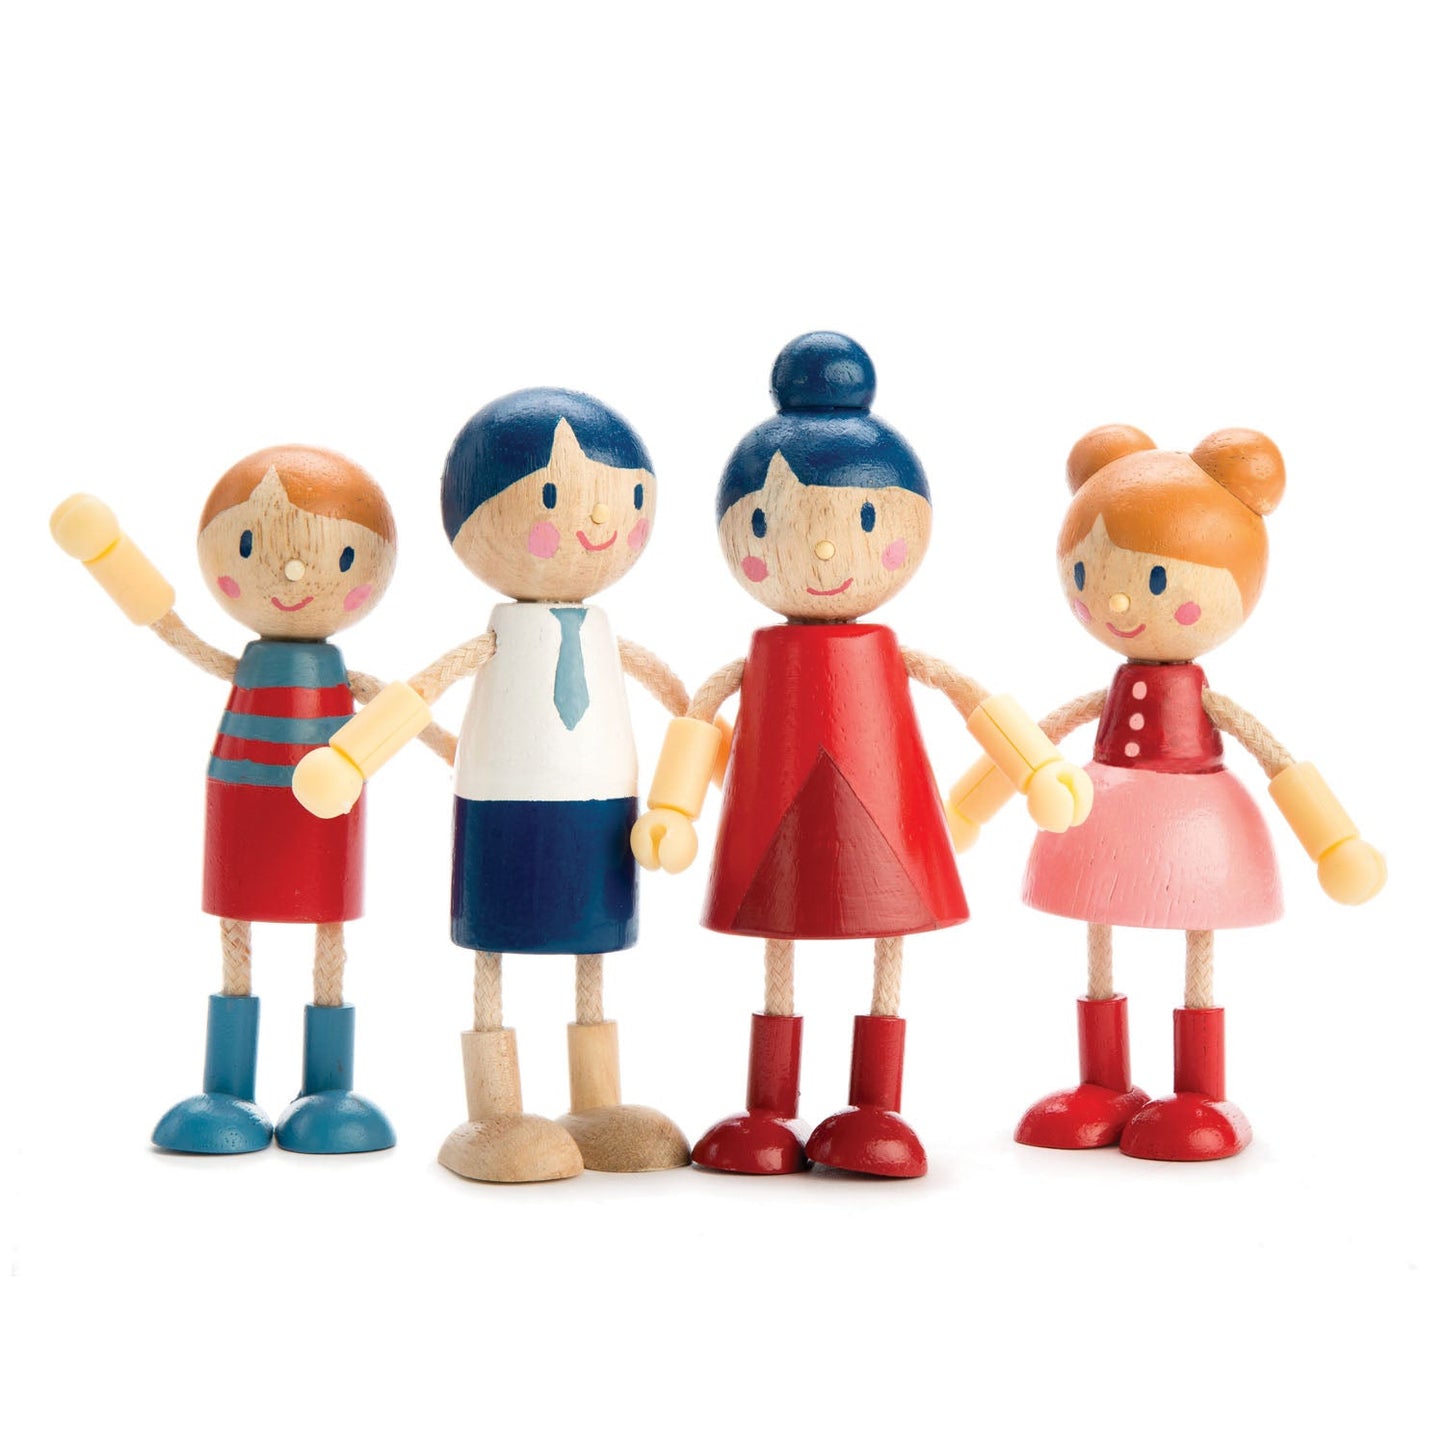 Tender Leaf Toys Doll Family